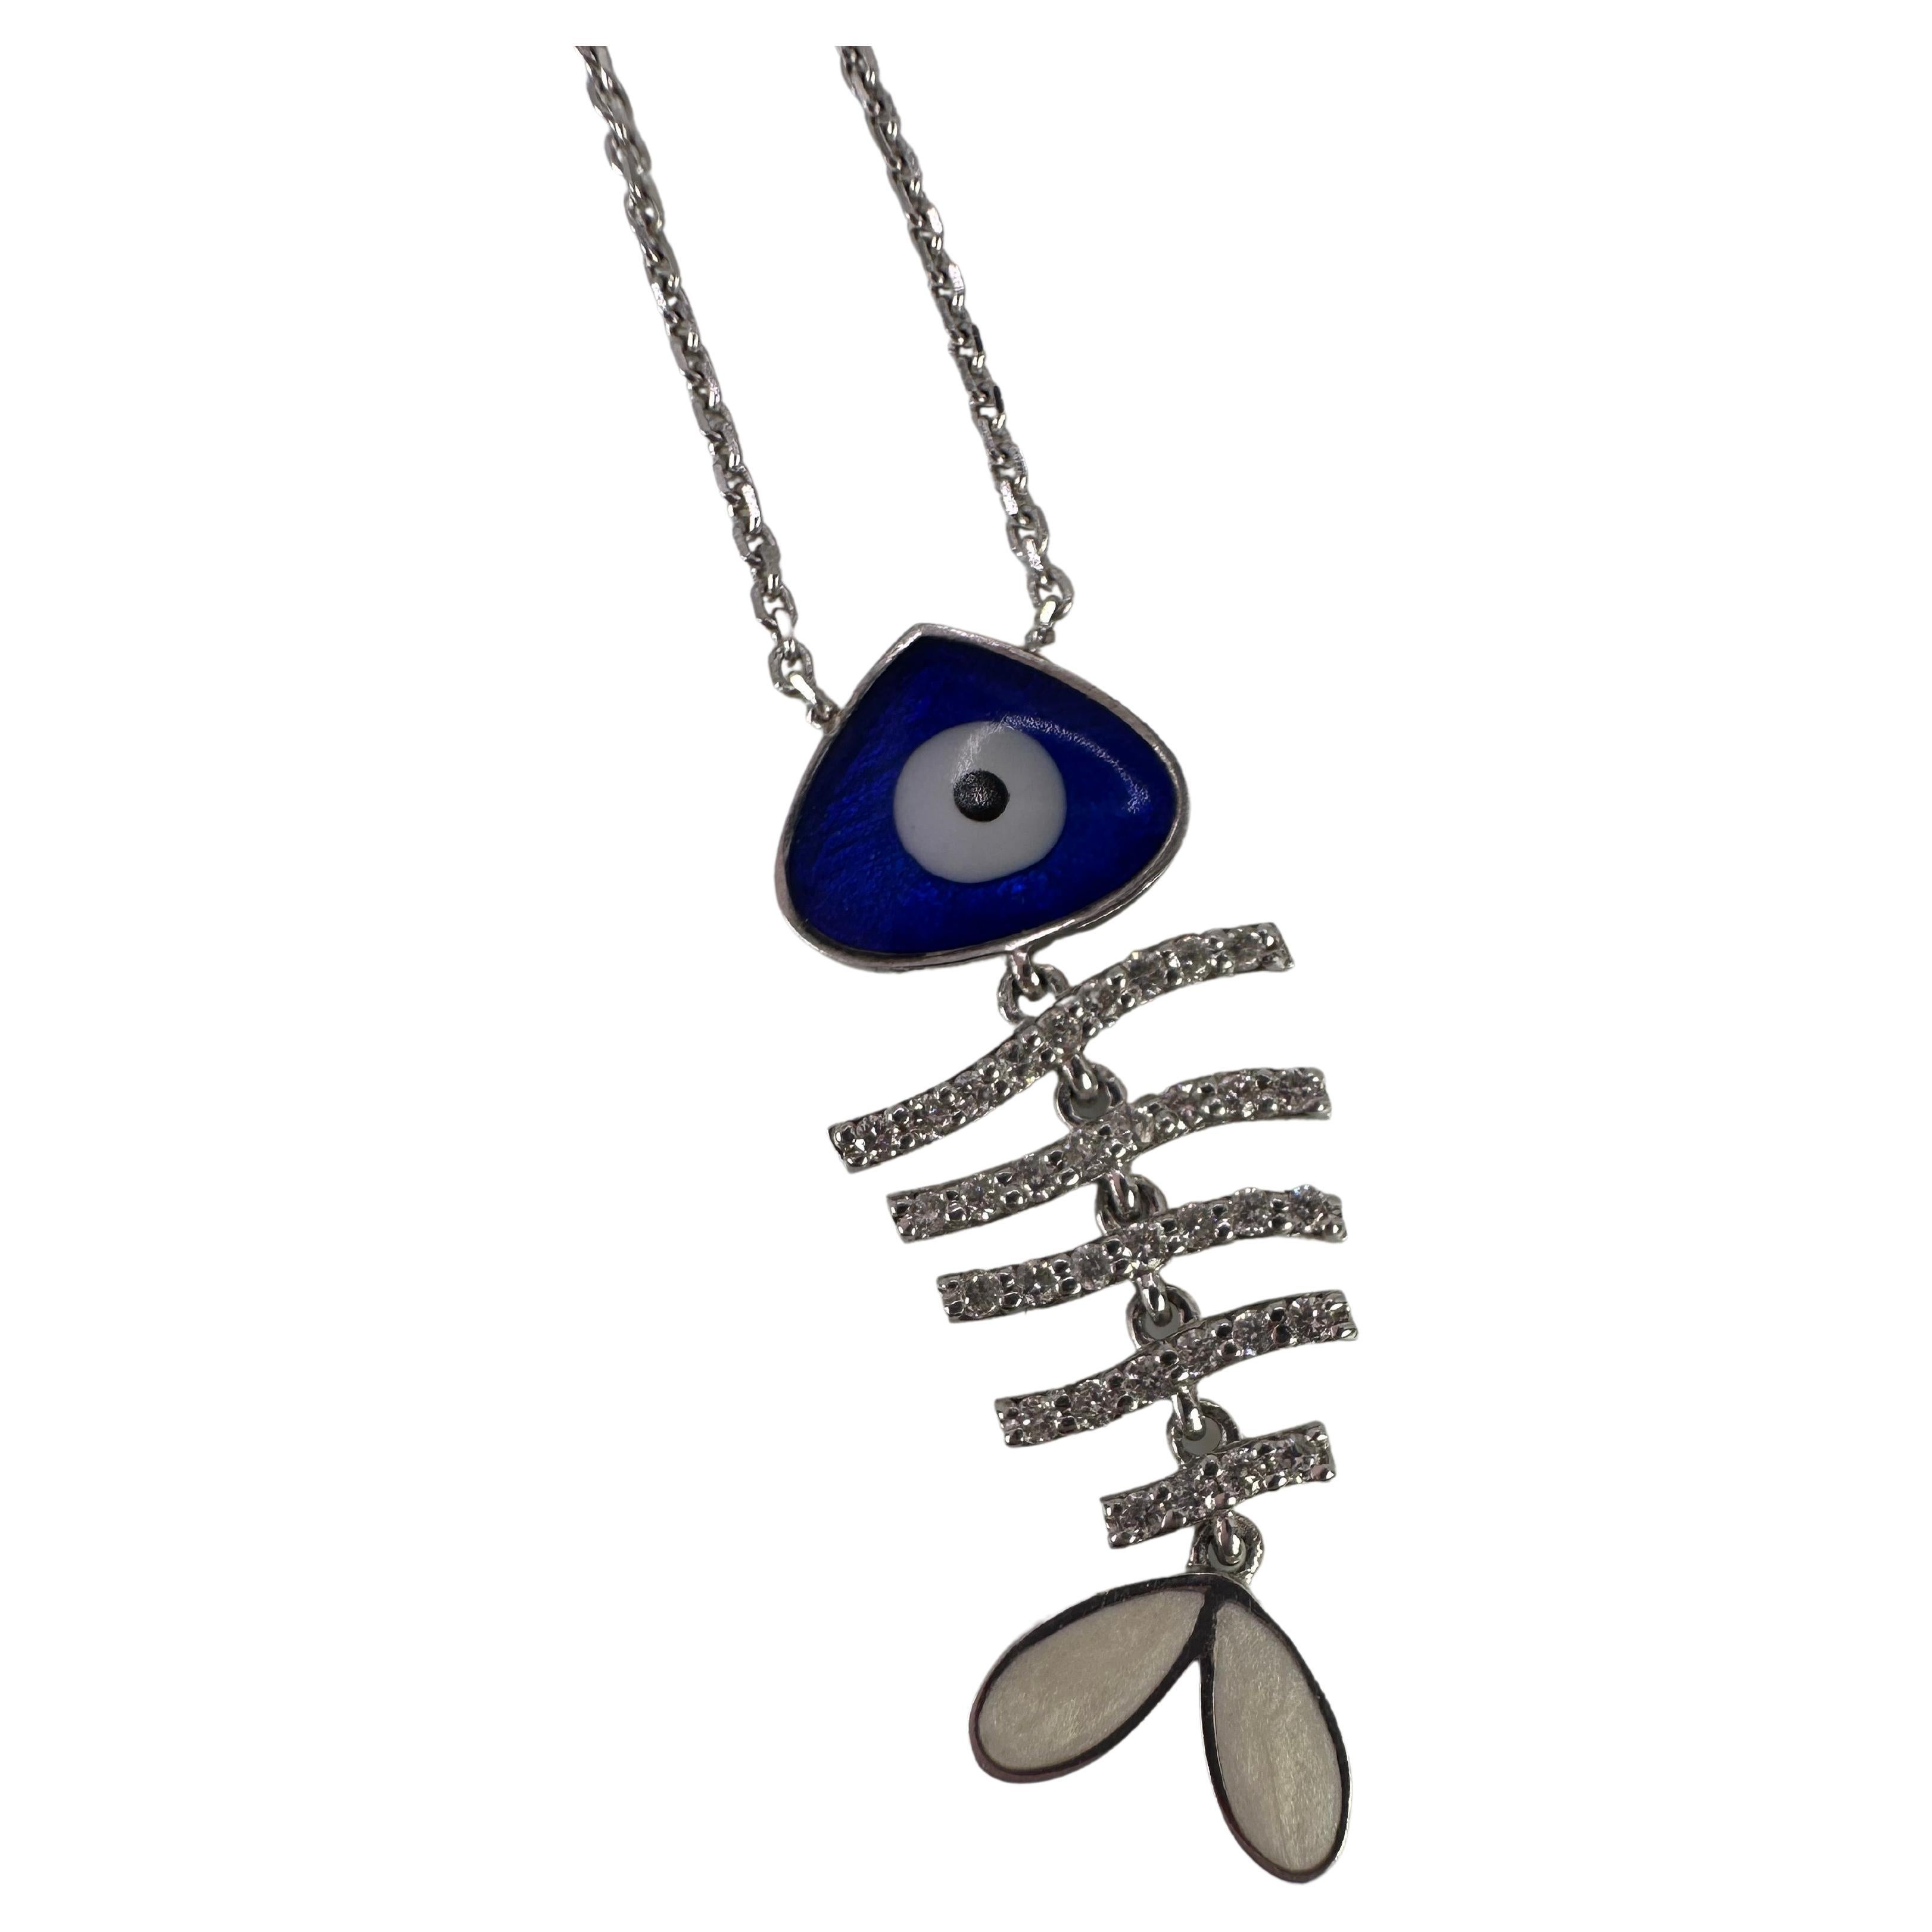 NWOT Unique OOAK Steampunk Fish / Eye Pendant Necklace | Pendant, Pendant  necklace, Necklace